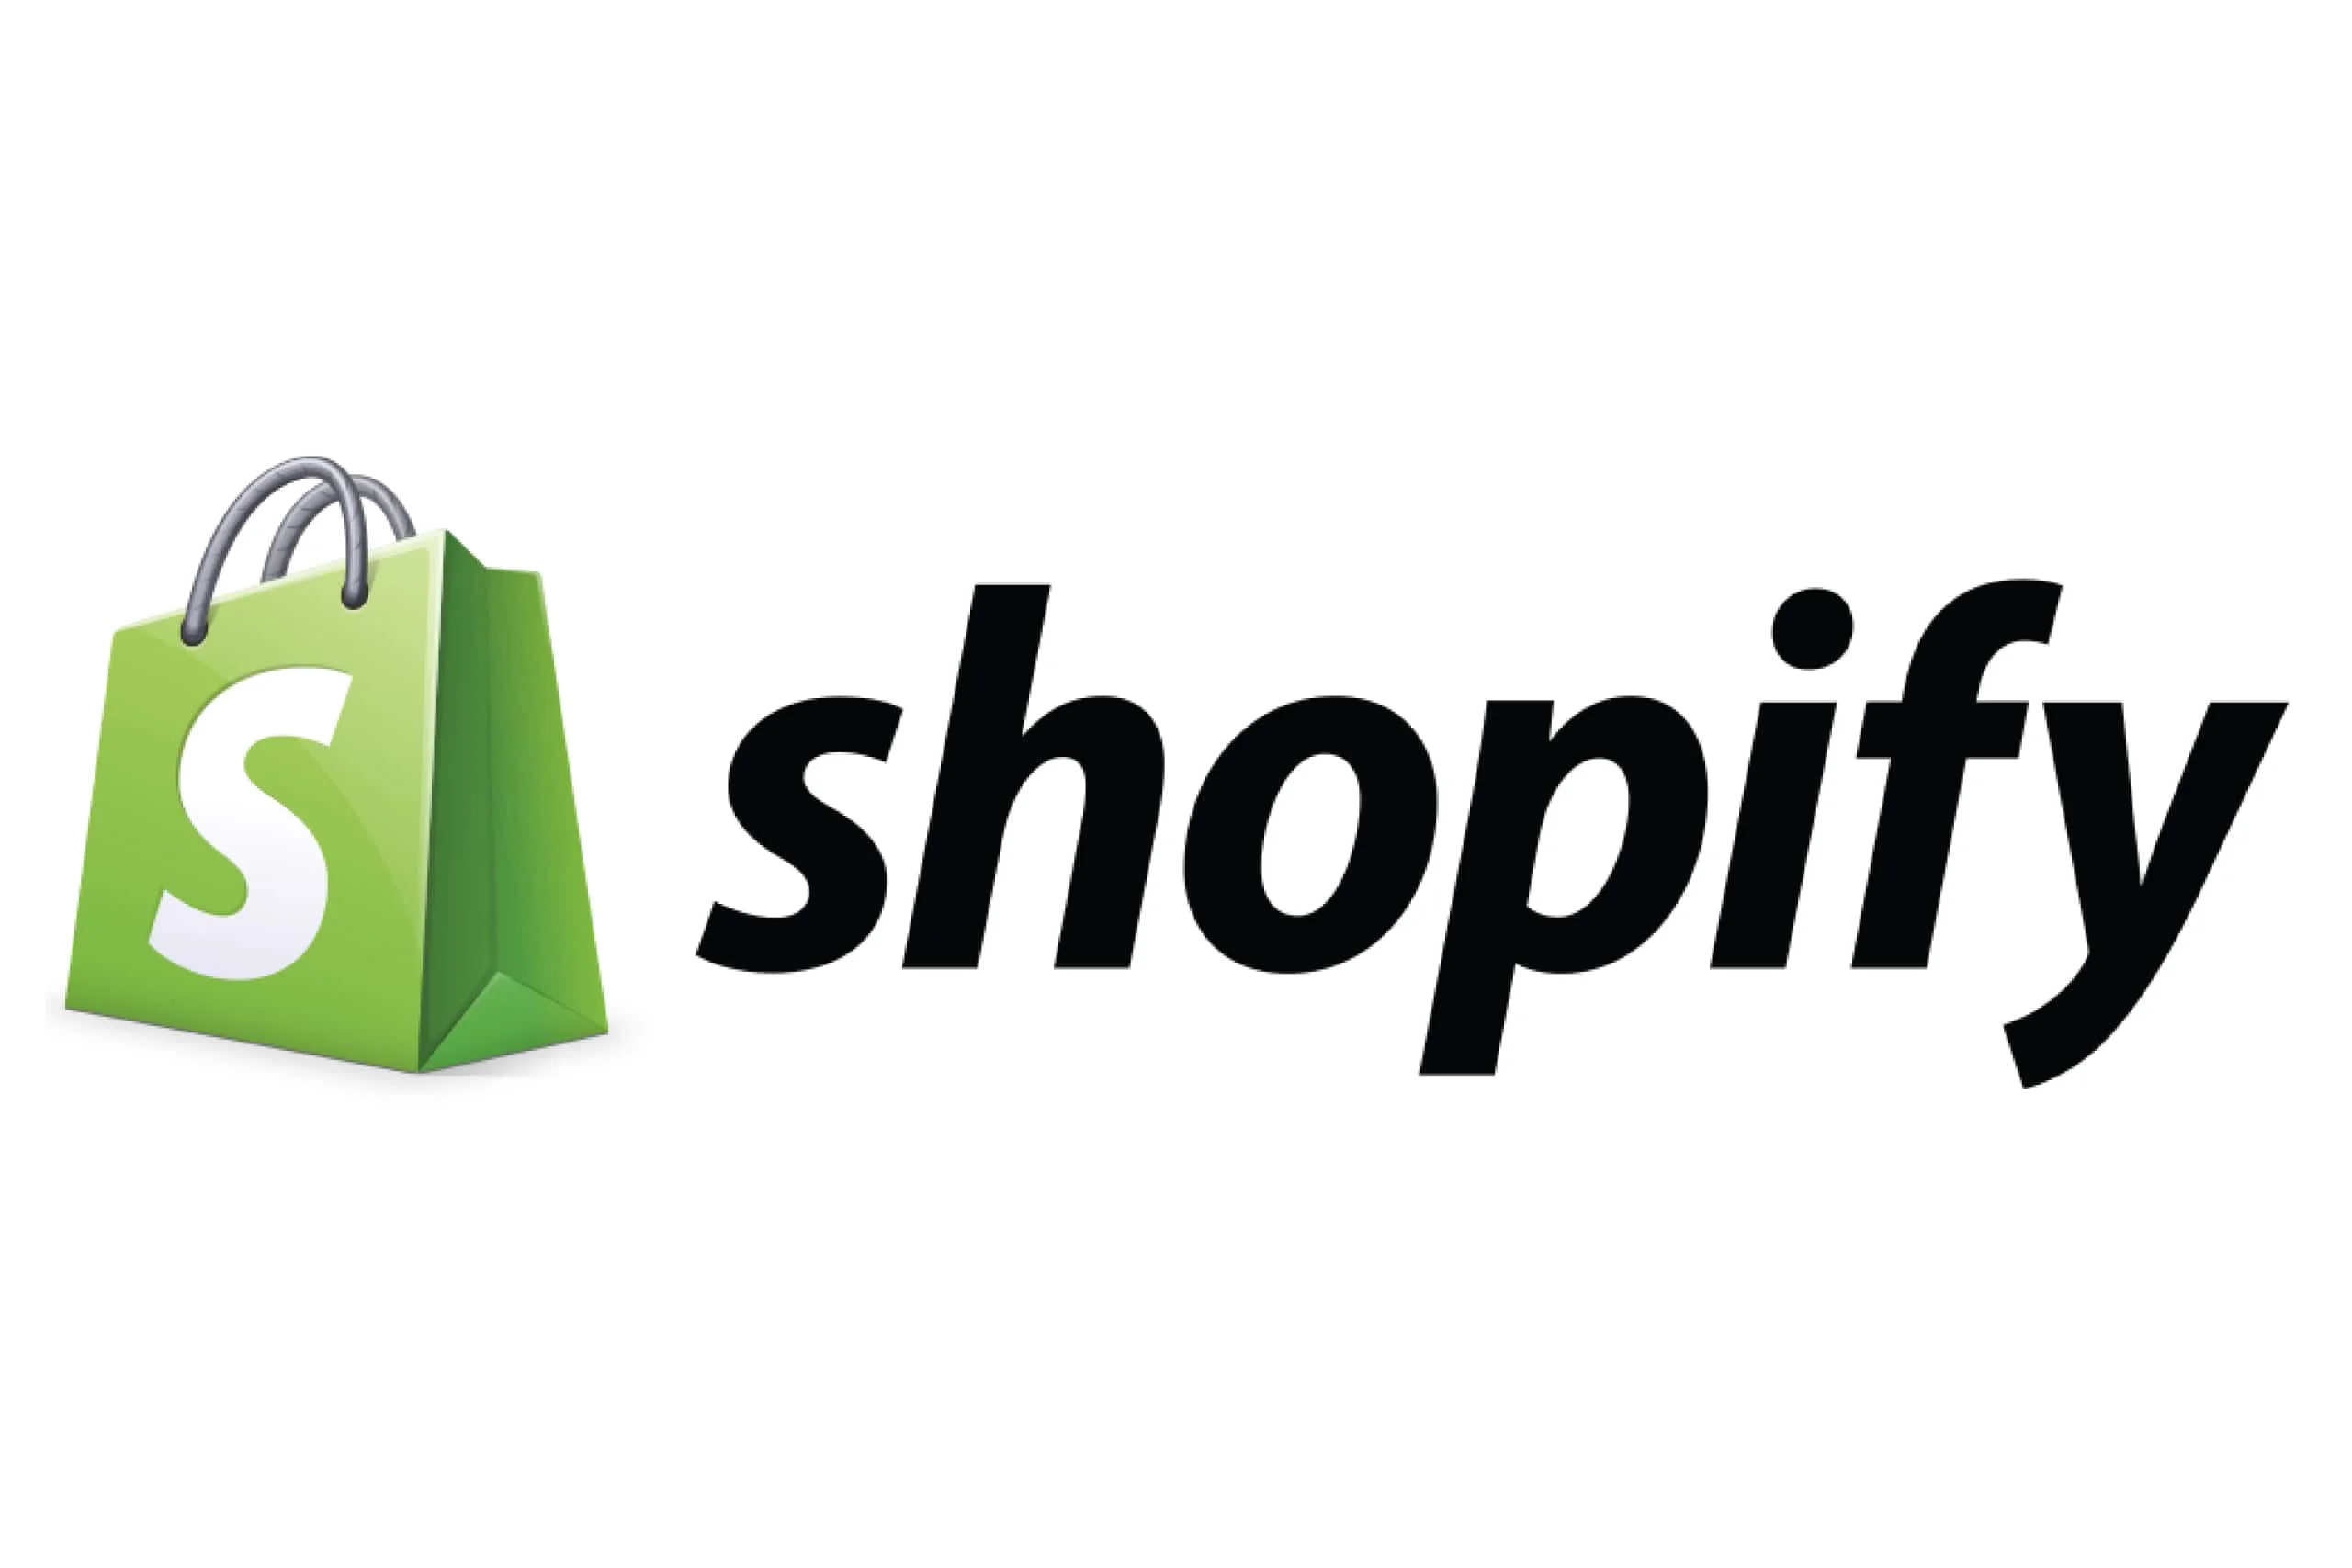 shopify development services in australia